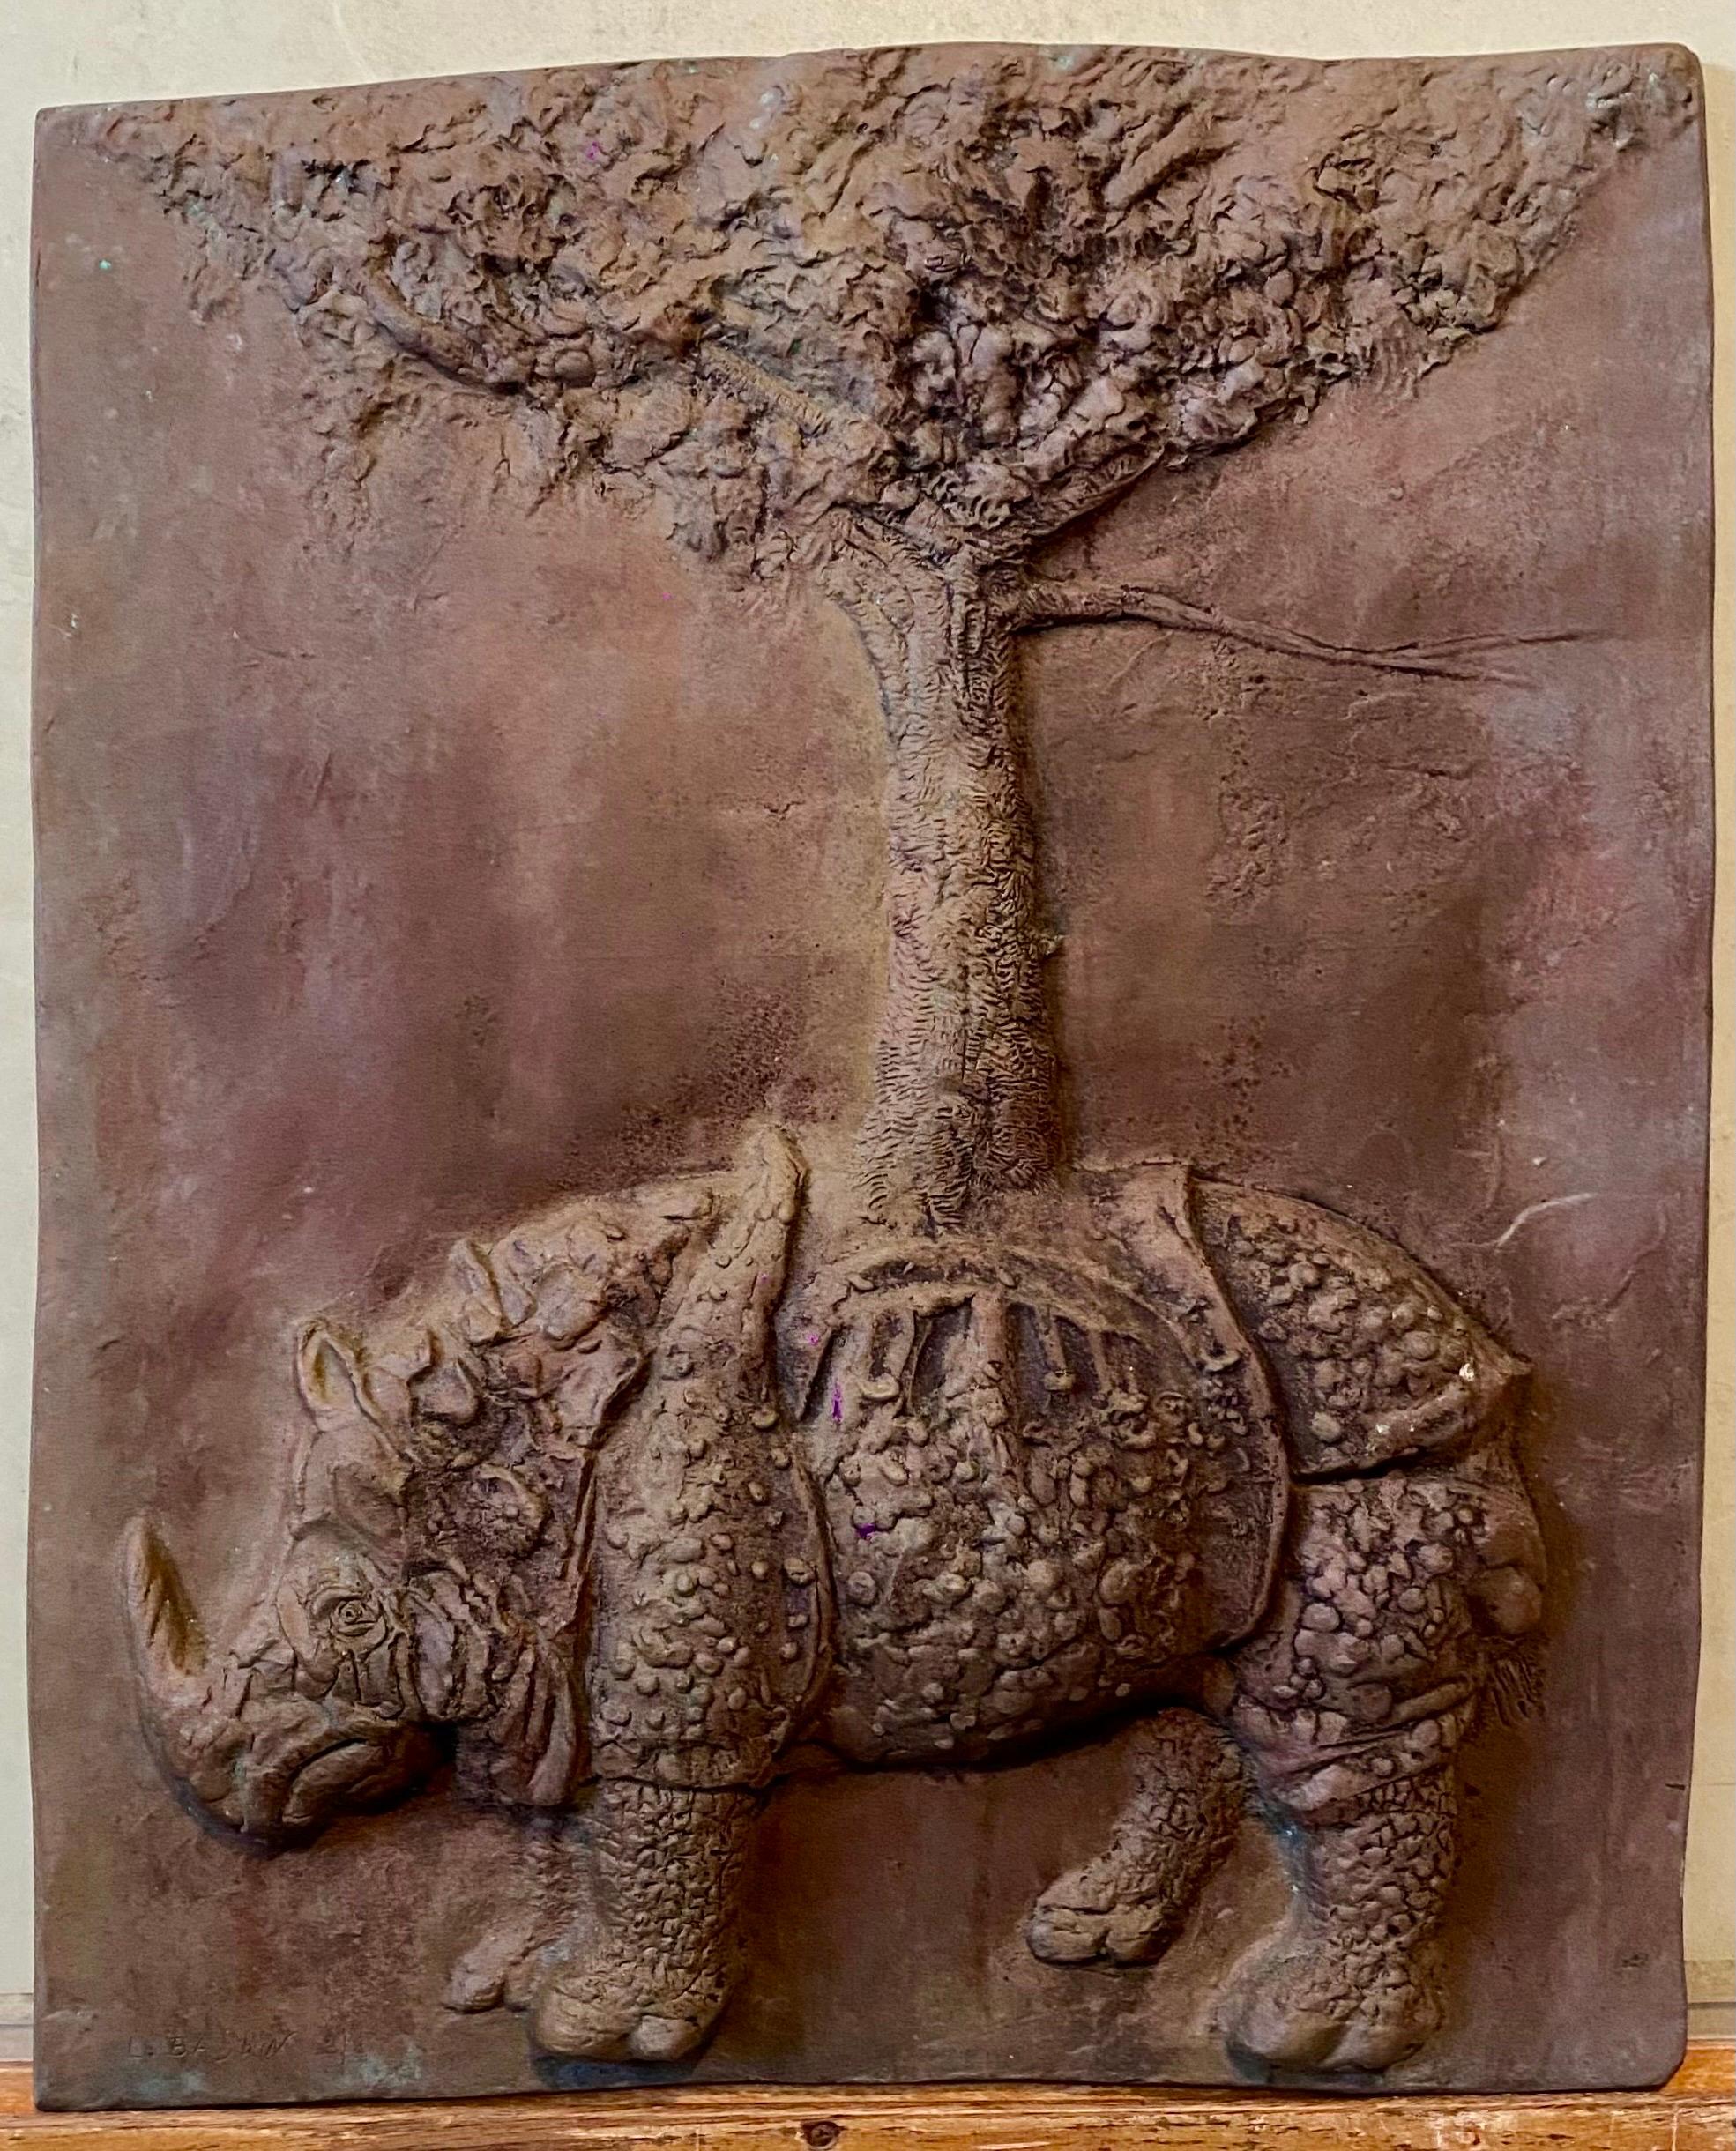 Leonard Baskin (1922-2000)
Fruchtbarkeit durch Beständigkeit
signiert, Auflage 3/8
Bronze, 1967
19.5 x 16 x 1,5 Zoll

Die Inspiration für dieses Werk war eine Bernini-Skulptur Elefant trägt Obelisk, eine Auftragsarbeit aus dem 17. Jahrhundert vor